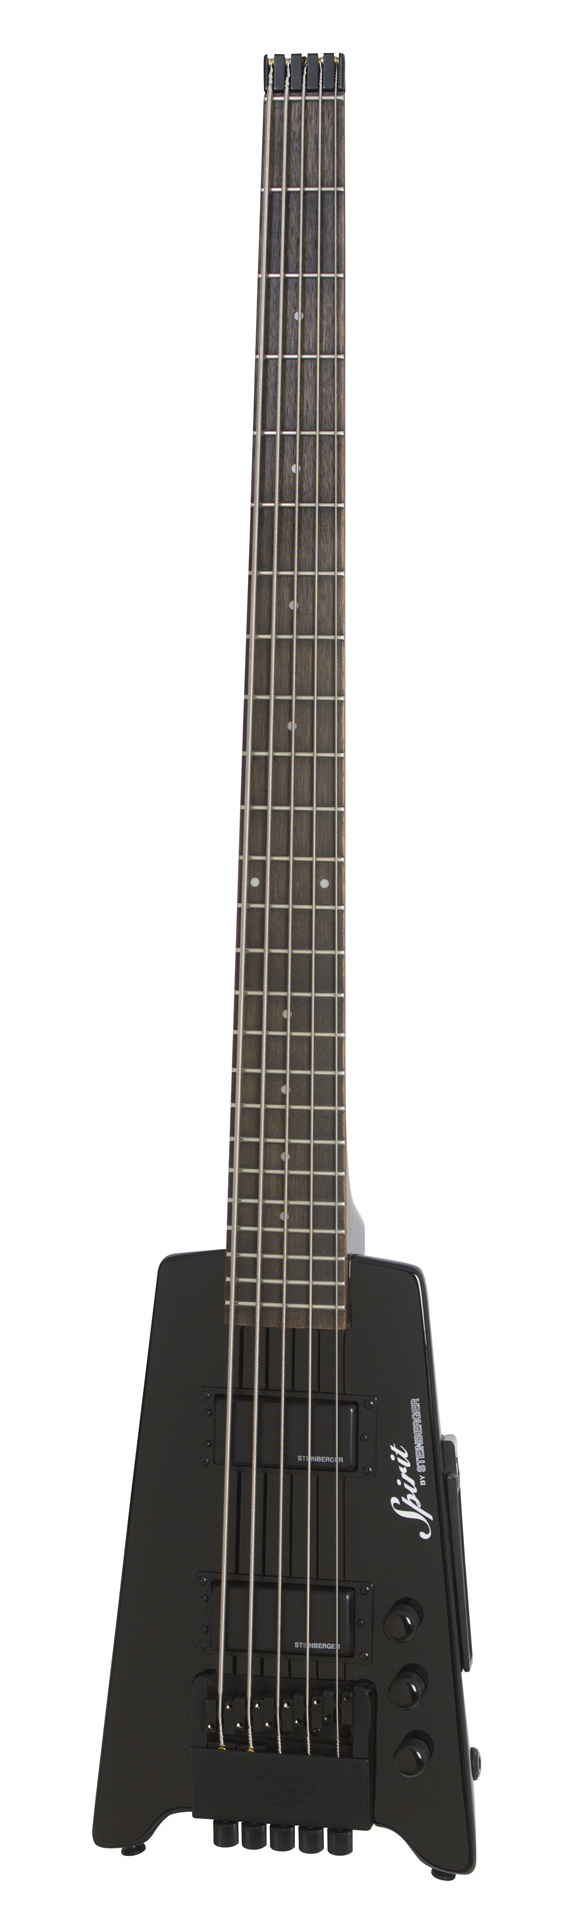 Steinberger Spirit XT-25 Standard 5-String Bass - Black (Including